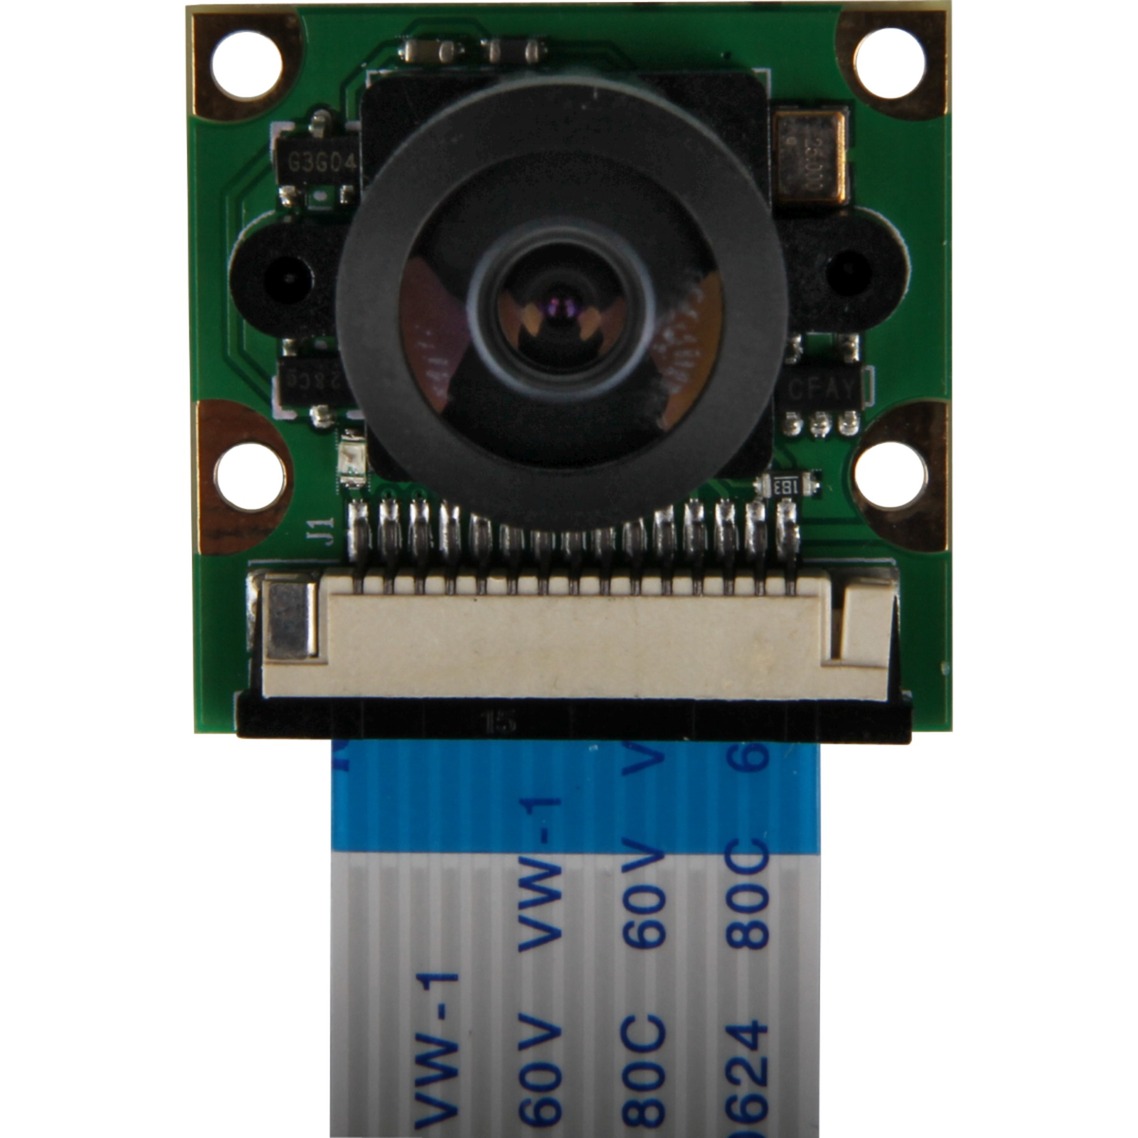 Image of Alternate - Raspberry Pi Weitwinkel Camera Module, Kameramodul online einkaufen bei Alternate